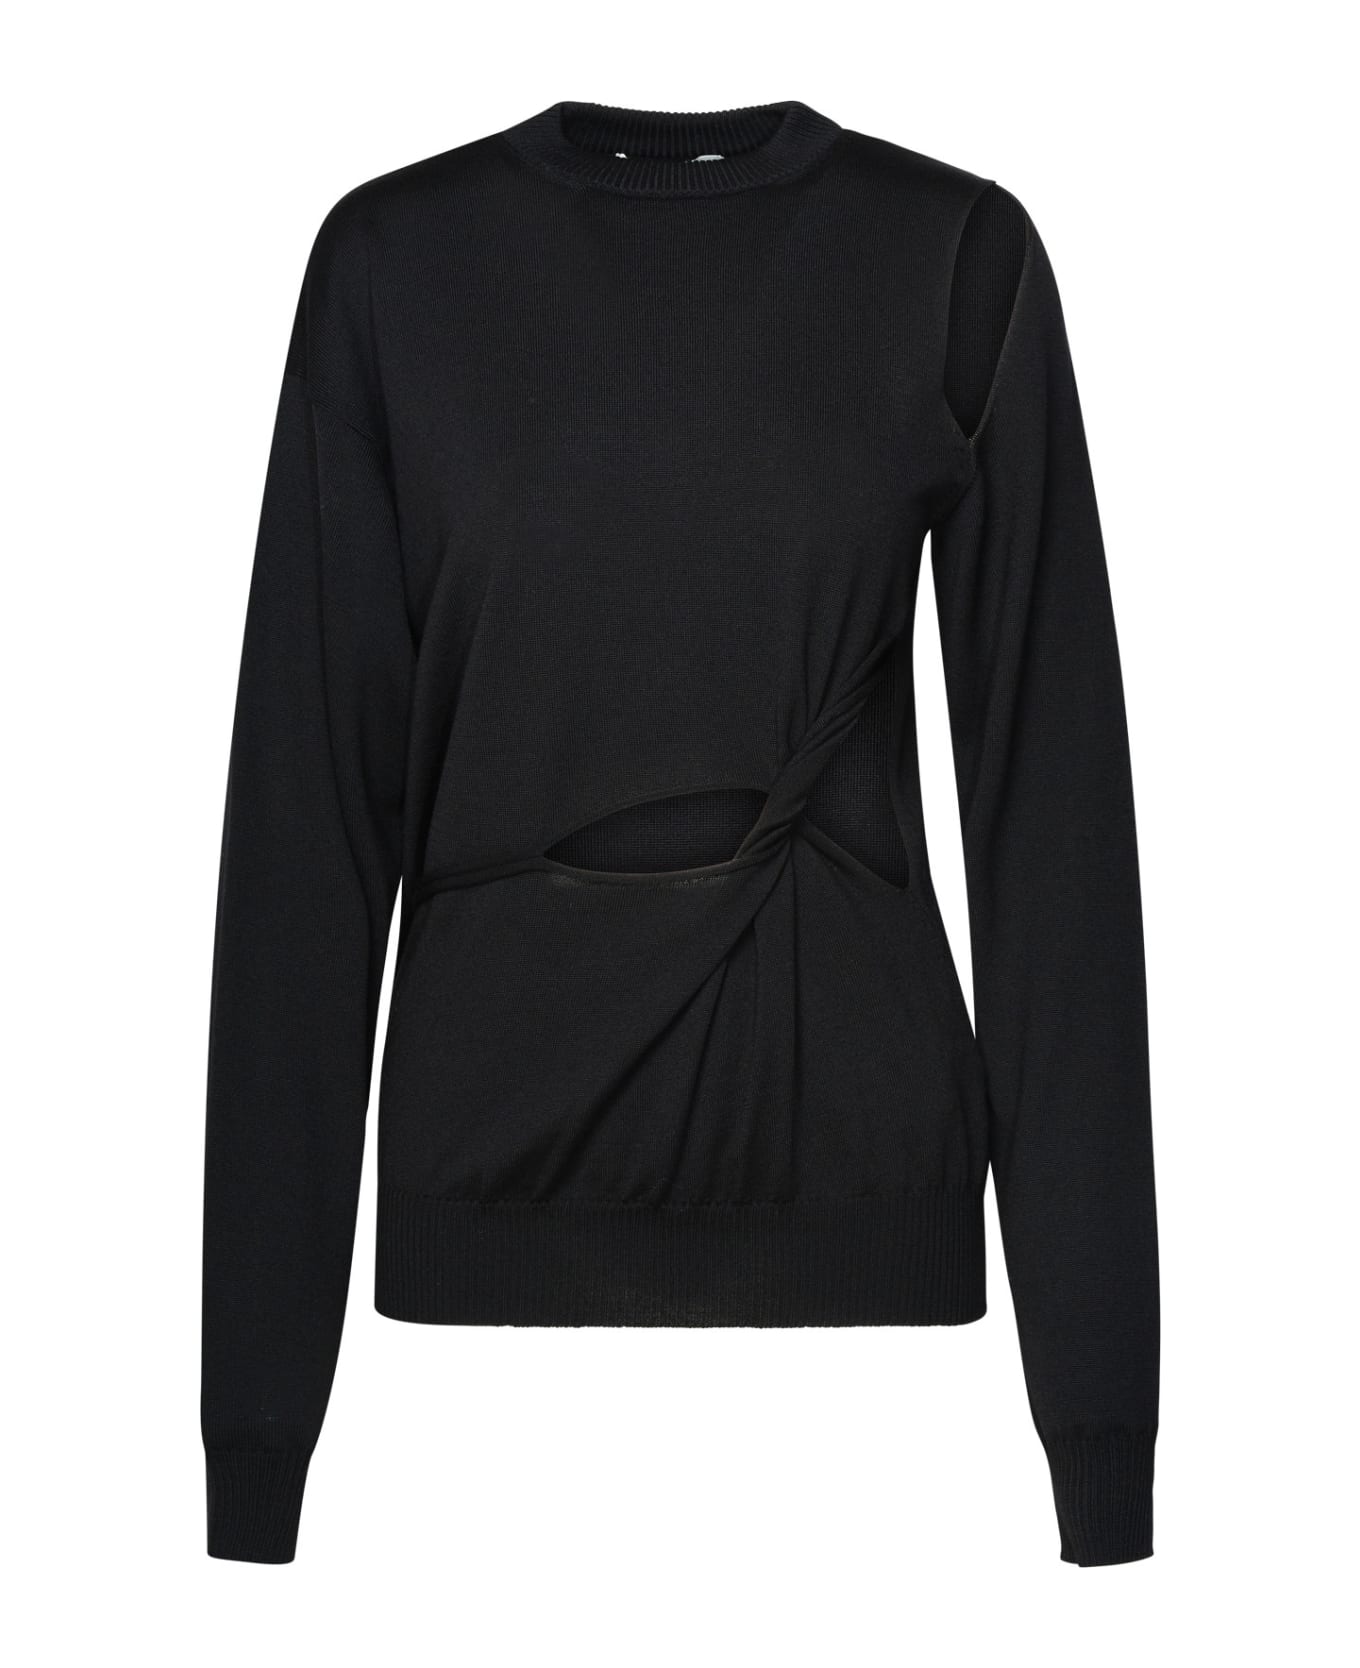 SportMax Black Virgin Wool Sweater - Black